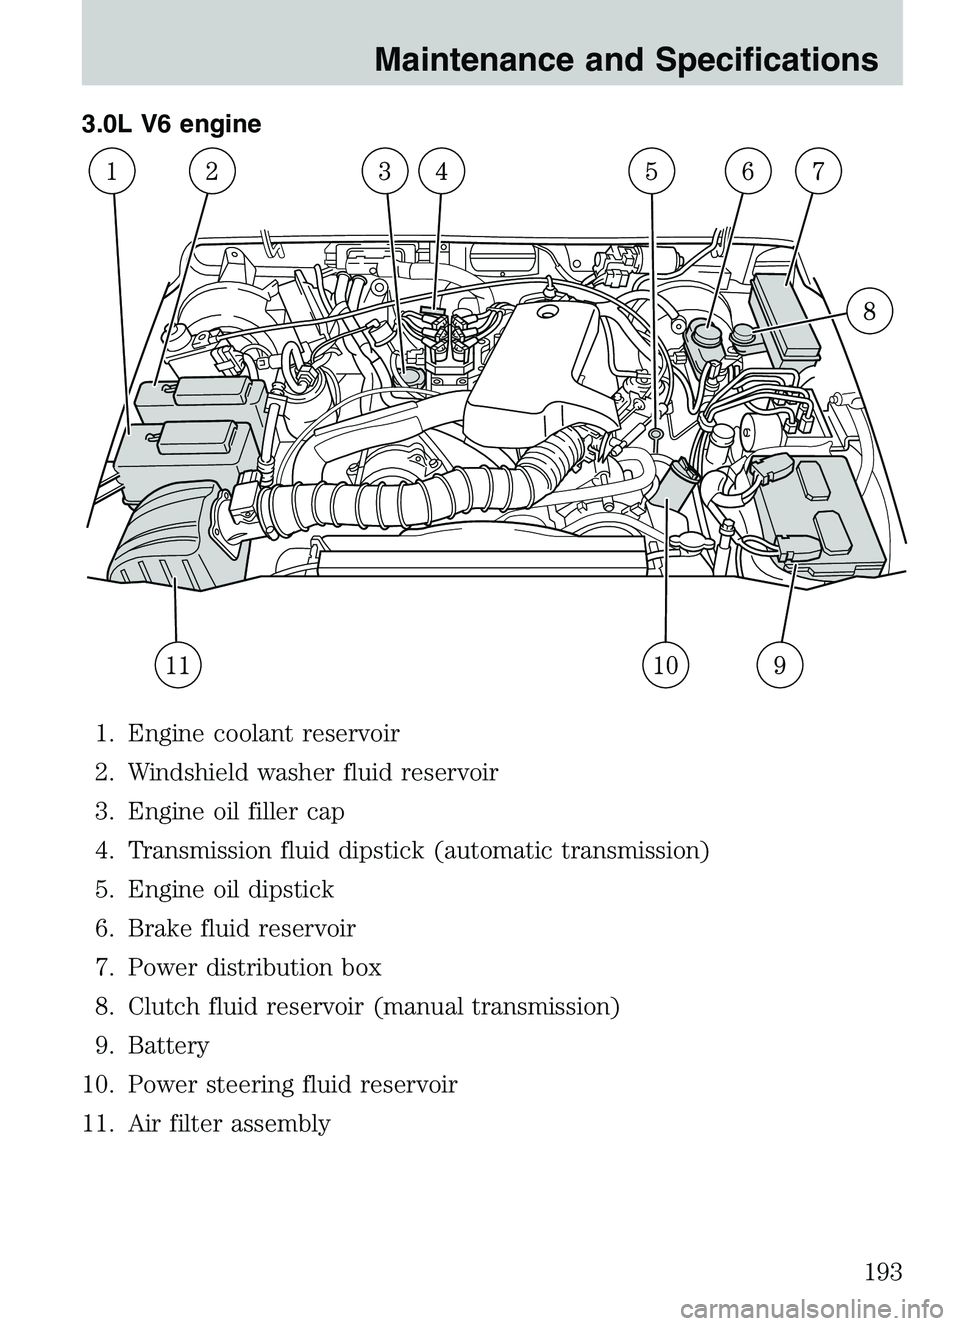 MAZDA MODEL B4000 2003  Owners Manual 3.0L V6 engine1. Engine coolant reservoir
2. Windshield washer fluid reservoir
3. Engine oil filler cap
4. Transmission fluid dipstick (automatic transmission)
5. Engine oil dipstick
6. Brake fluid re